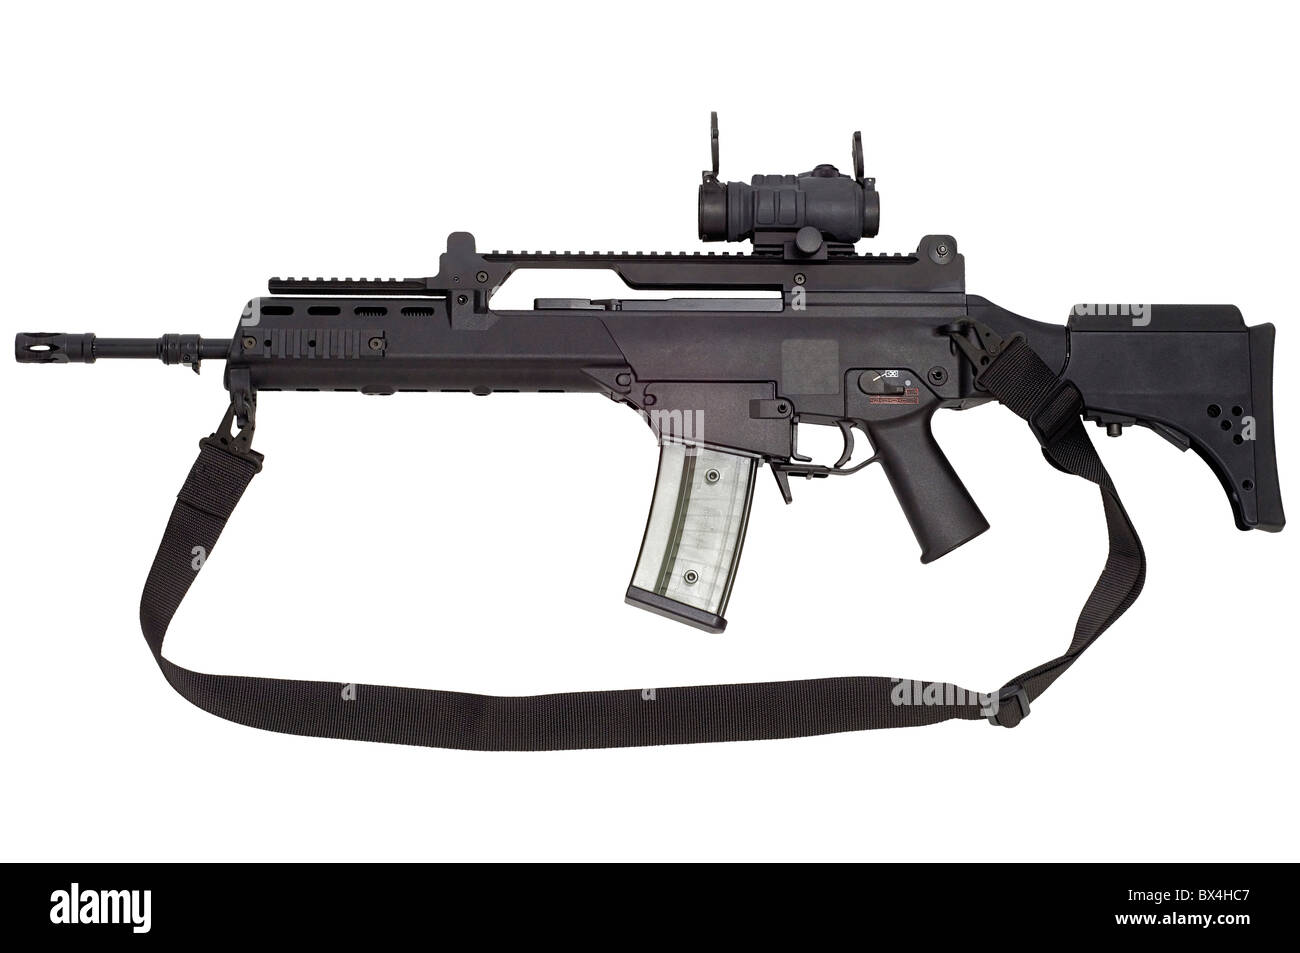 Advanced arma automatica G36 in armamento della NATO e dell'esercito tedesco. Foto Stock